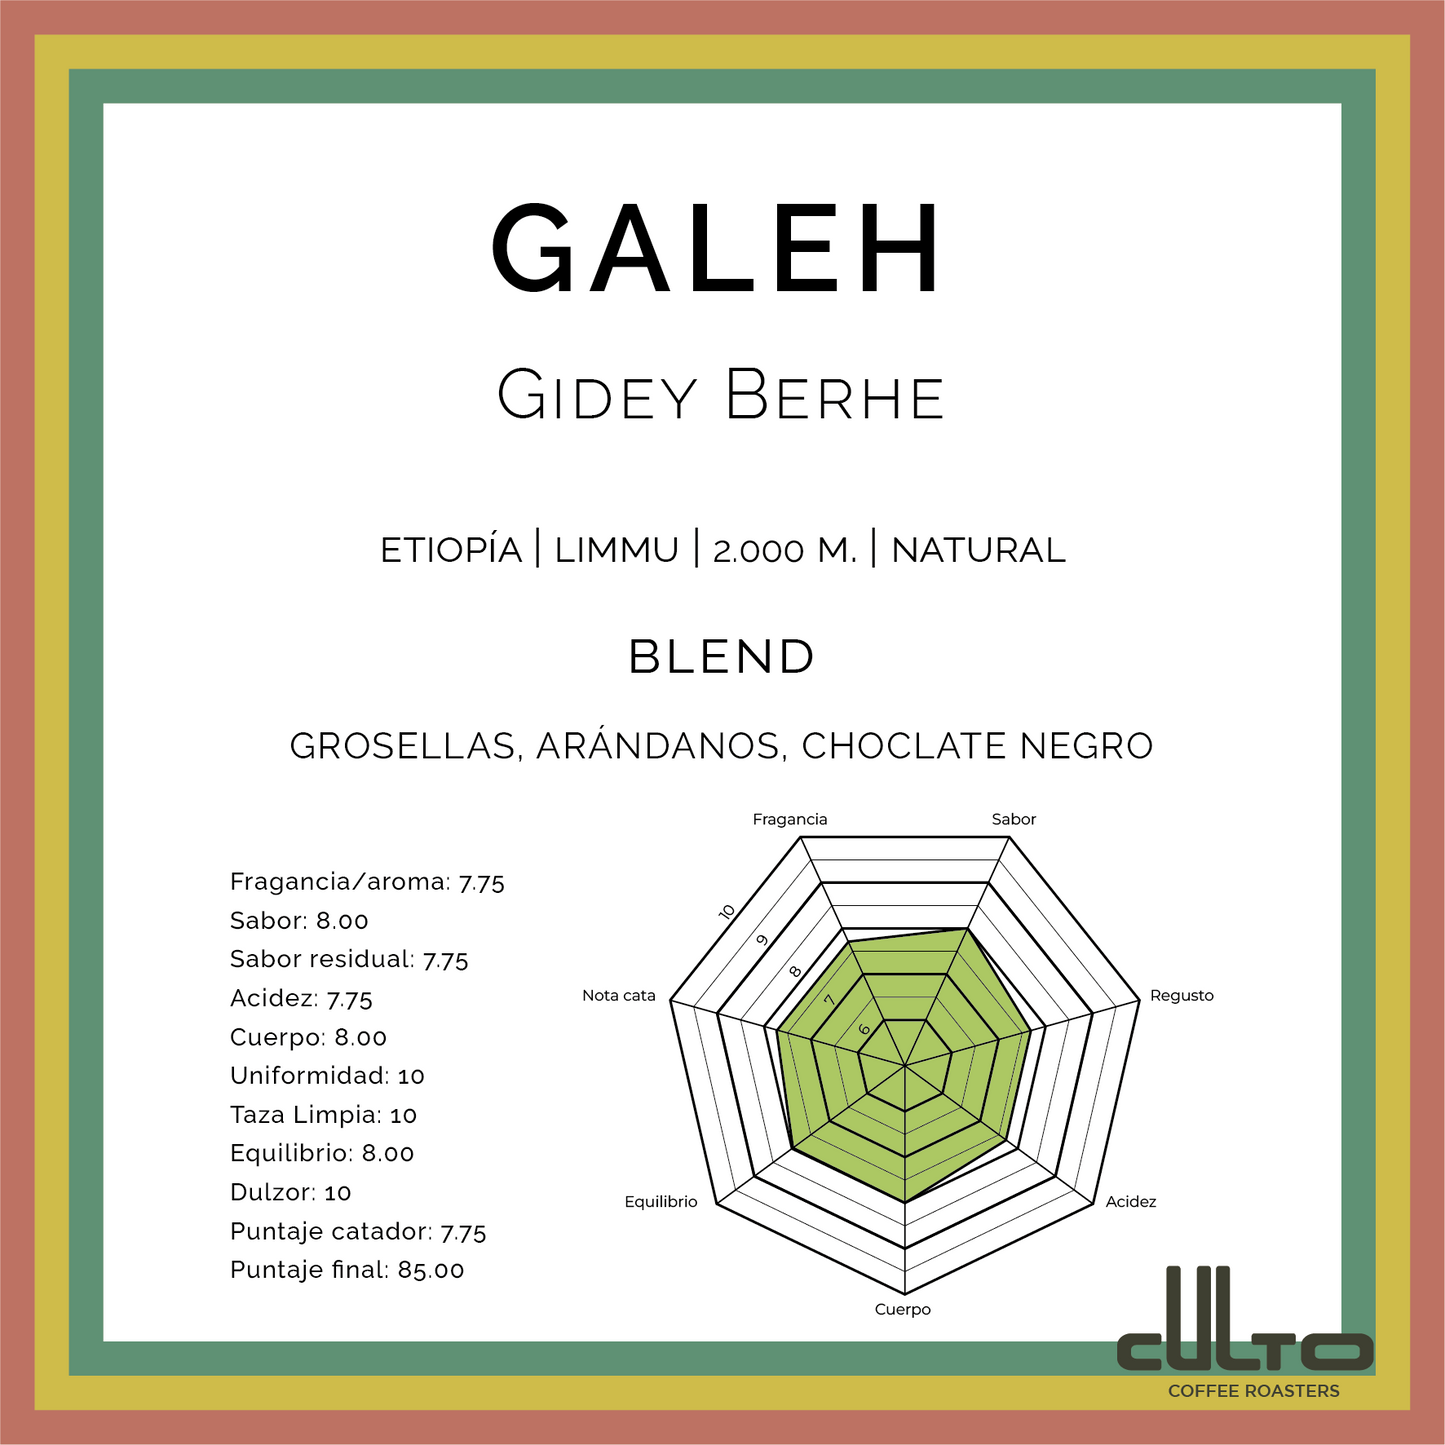 Galeh - Etiopía